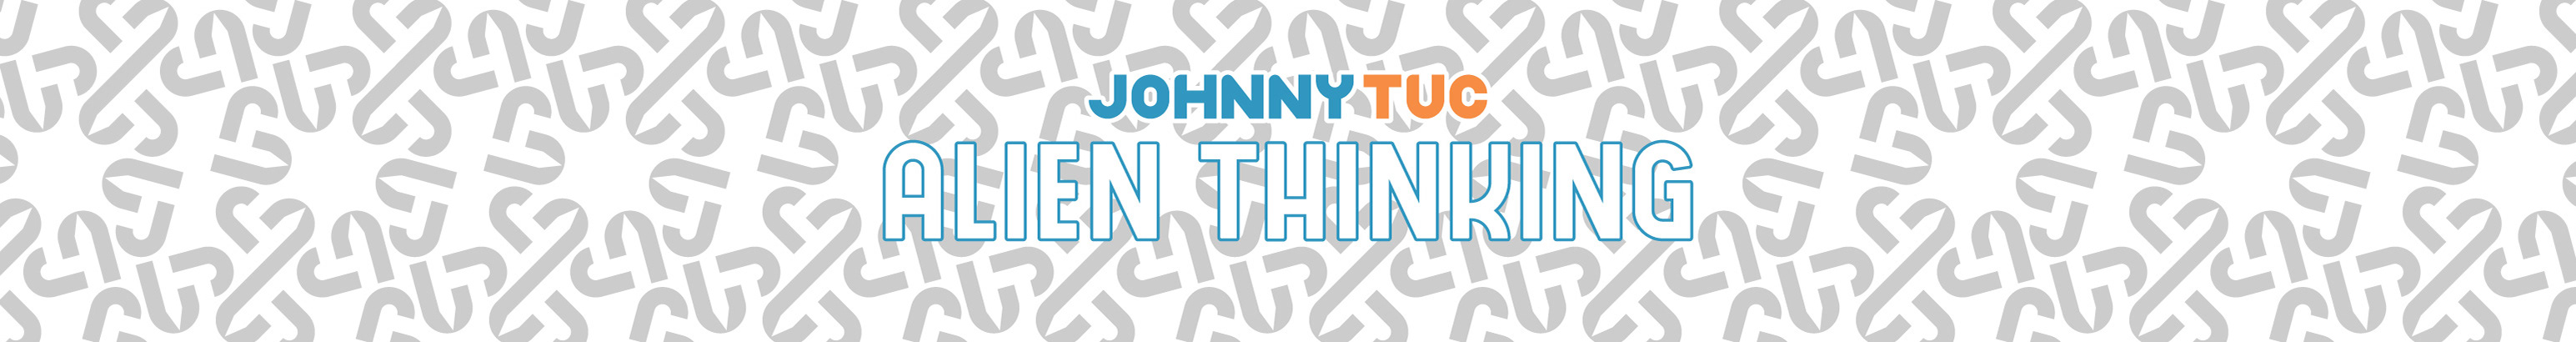 Johnny Tuc profil başlığı